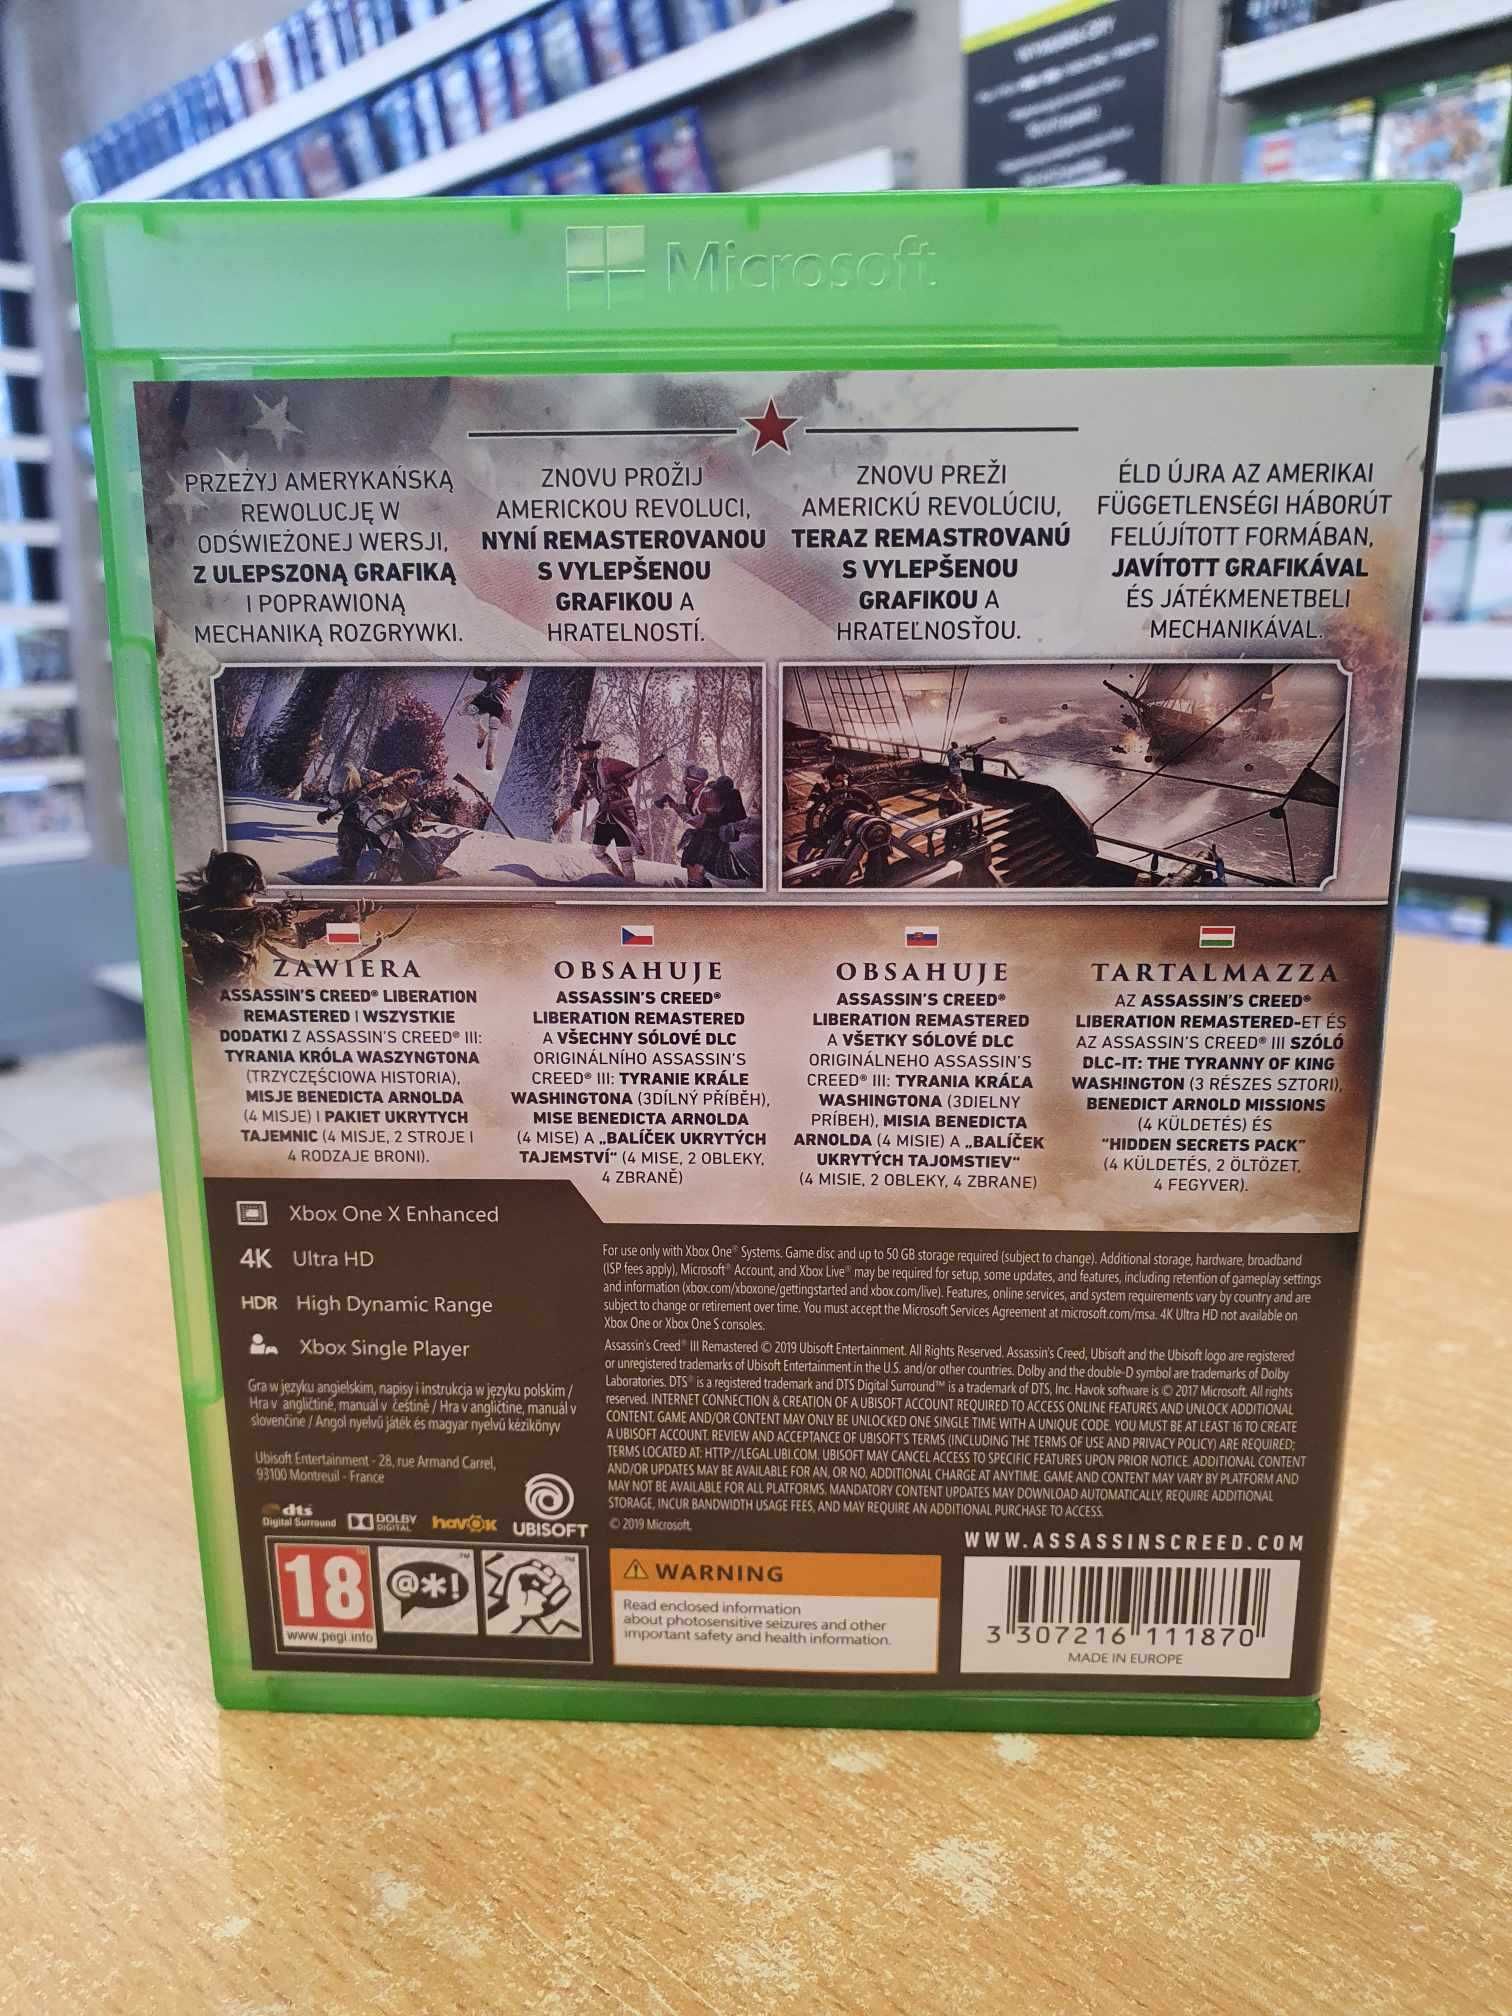 Assassin's Creed 3 Remastered XBOX ONE Sprzedaż/Wymiana Lara Games